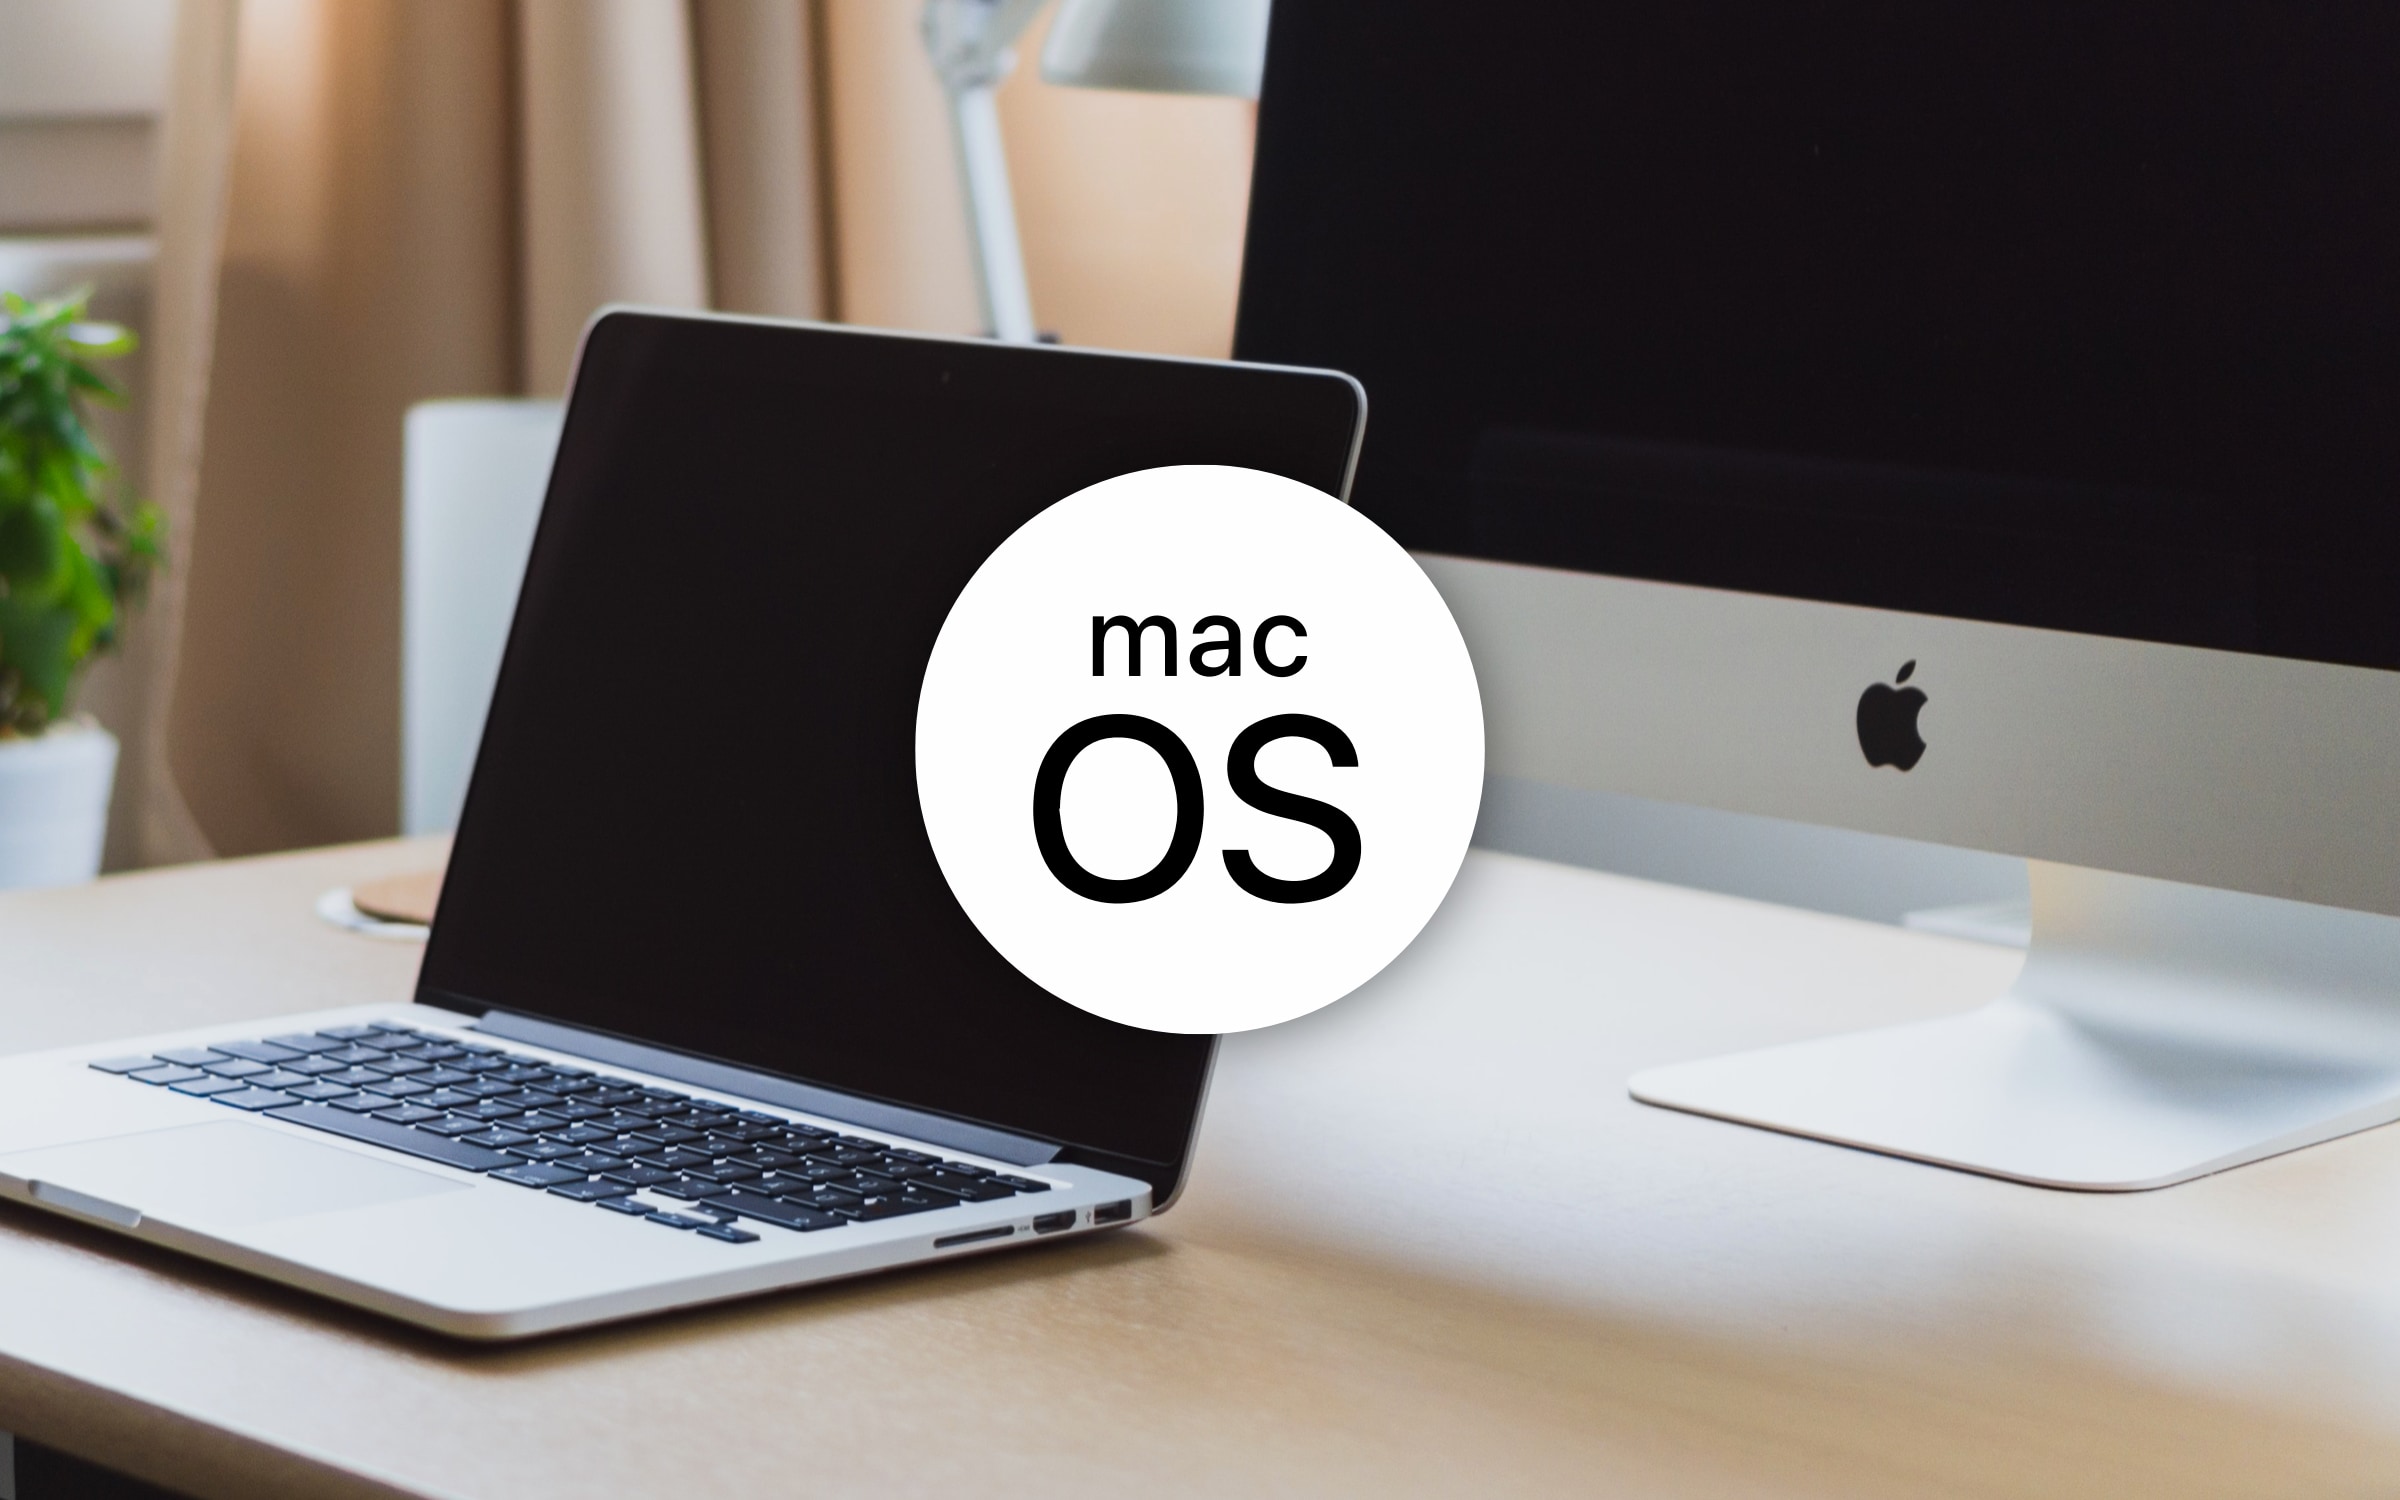 macOS Systemvoraussetzungen - Welche macOS oder Mac OS Version läuft auf meinem Apple Mac?